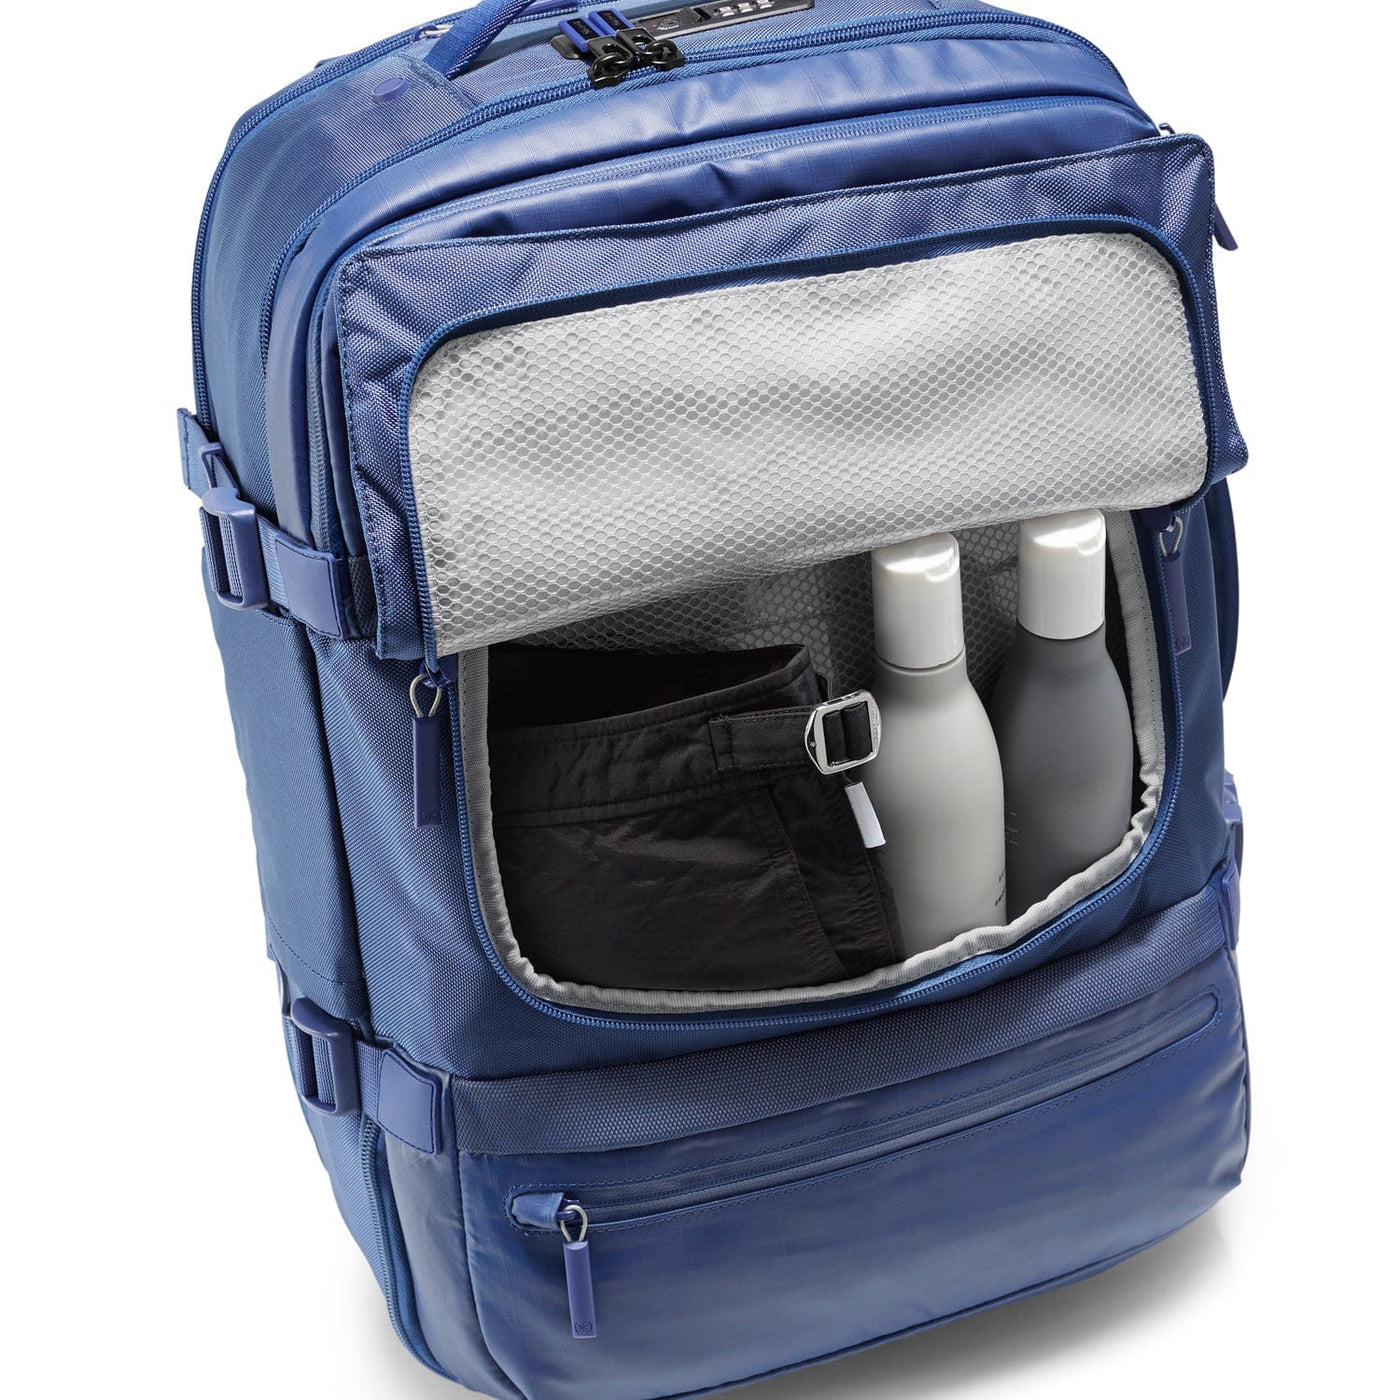 Promotional Speck Cooler Backpack $13.98